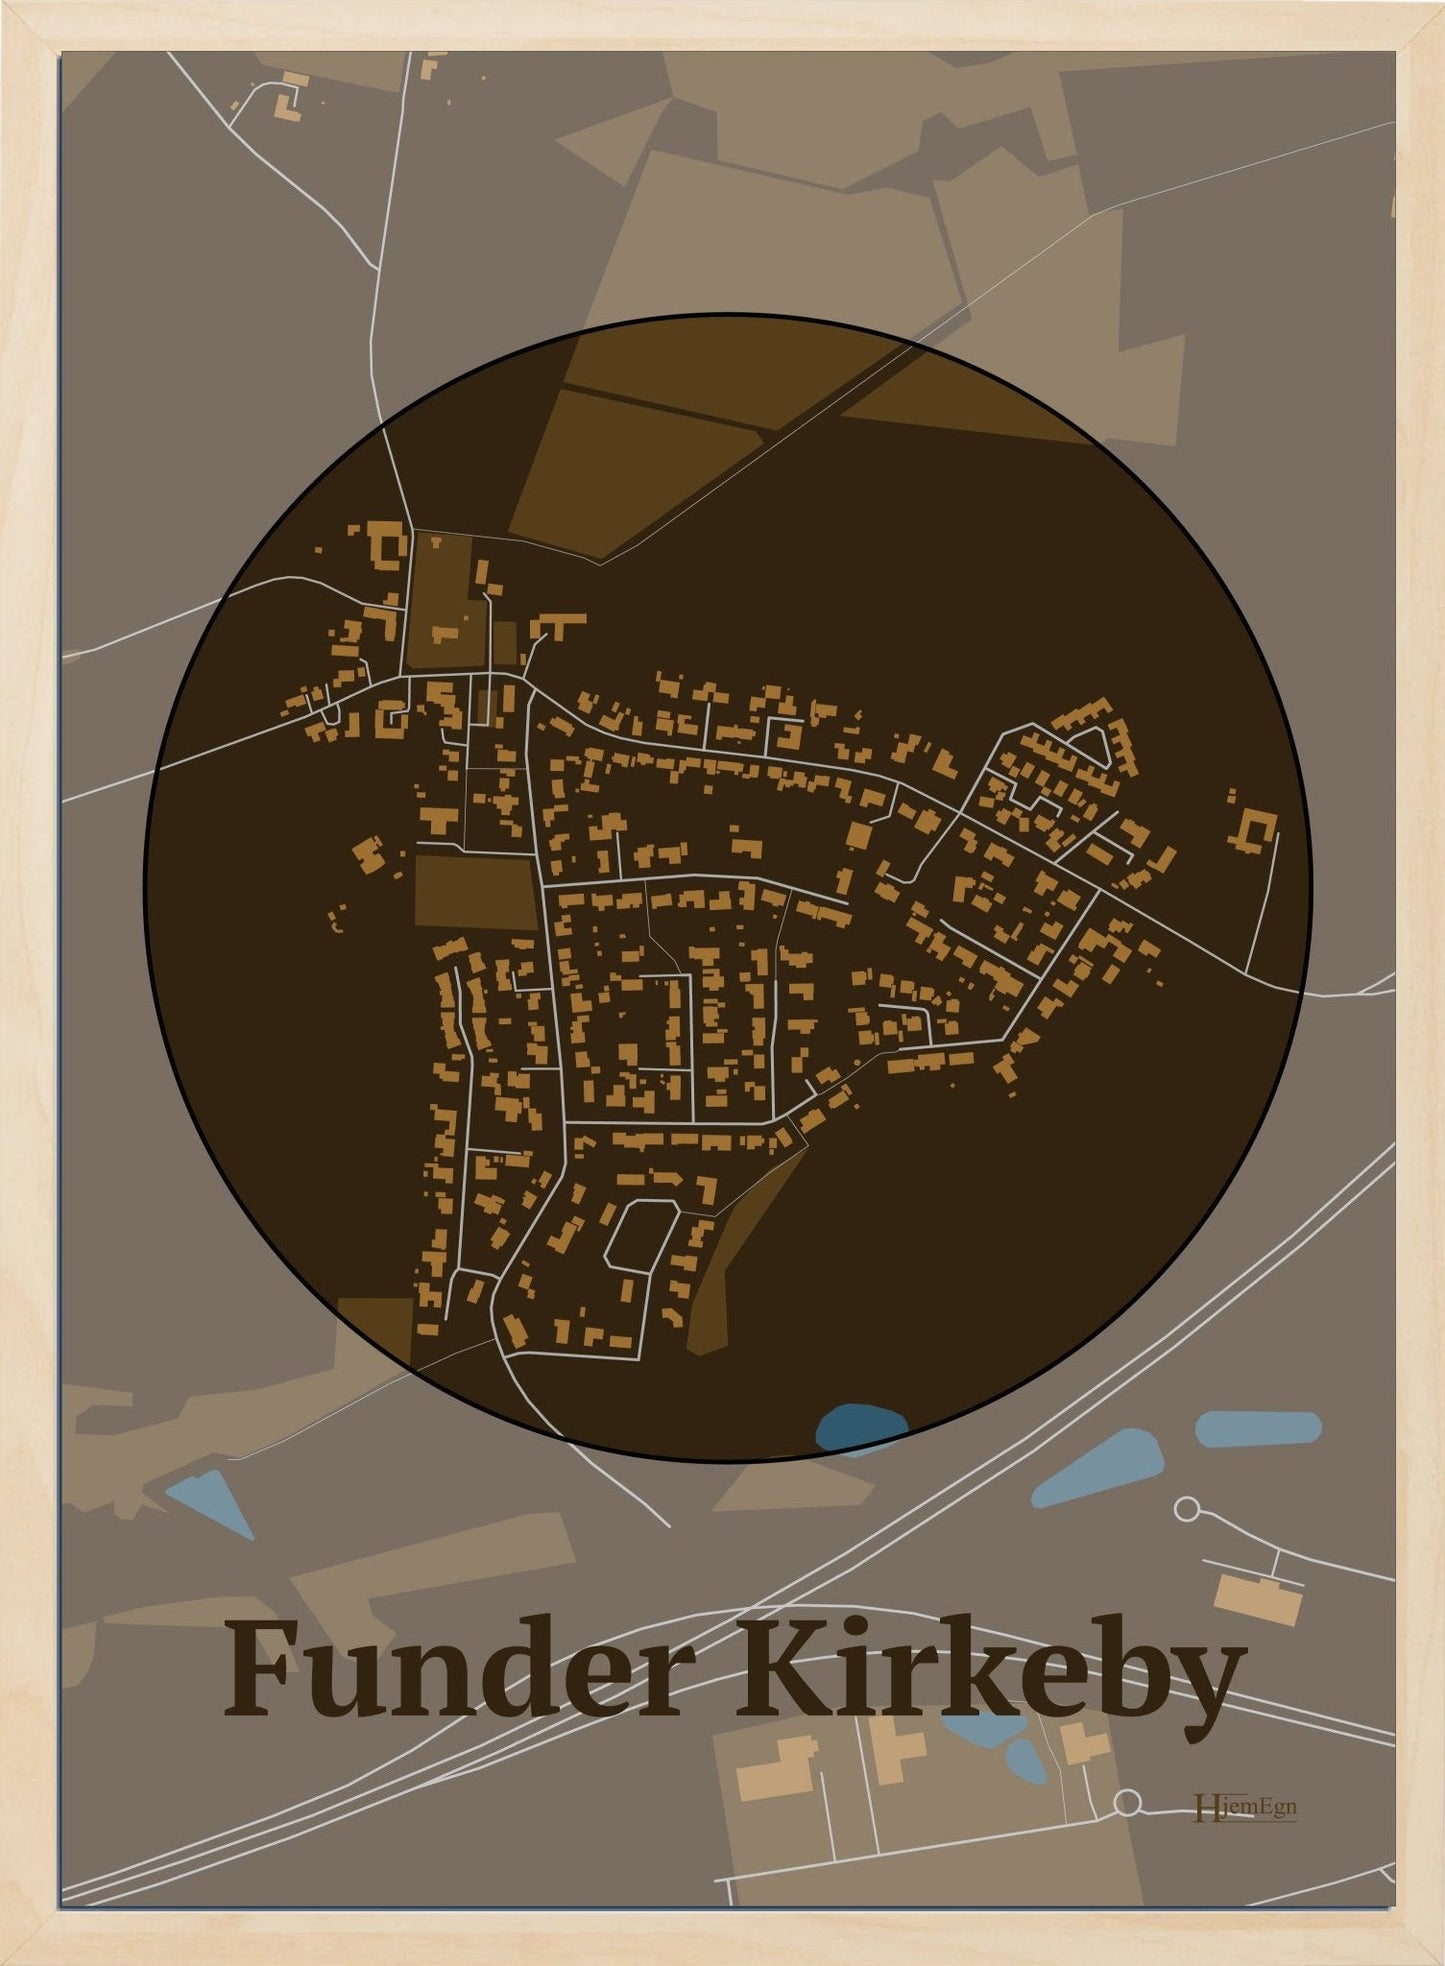 Funder Kirkeby plakat i farve mørk brun og HjemEgn.dk design centrum. Design bykort for Funder Kirkeby